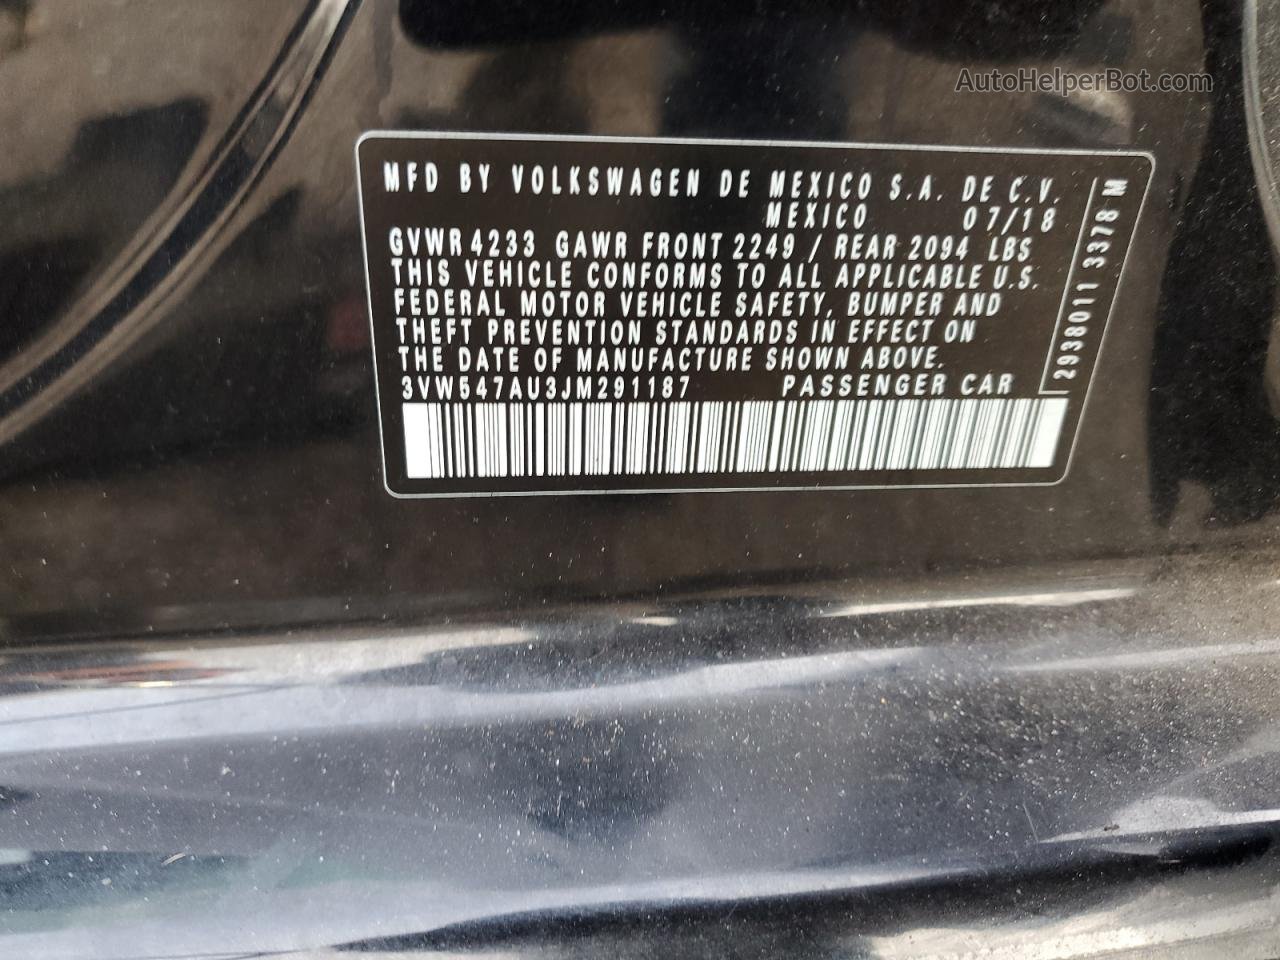 2018 Volkswagen Gti S Черный vin: 3VW547AU3JM291187